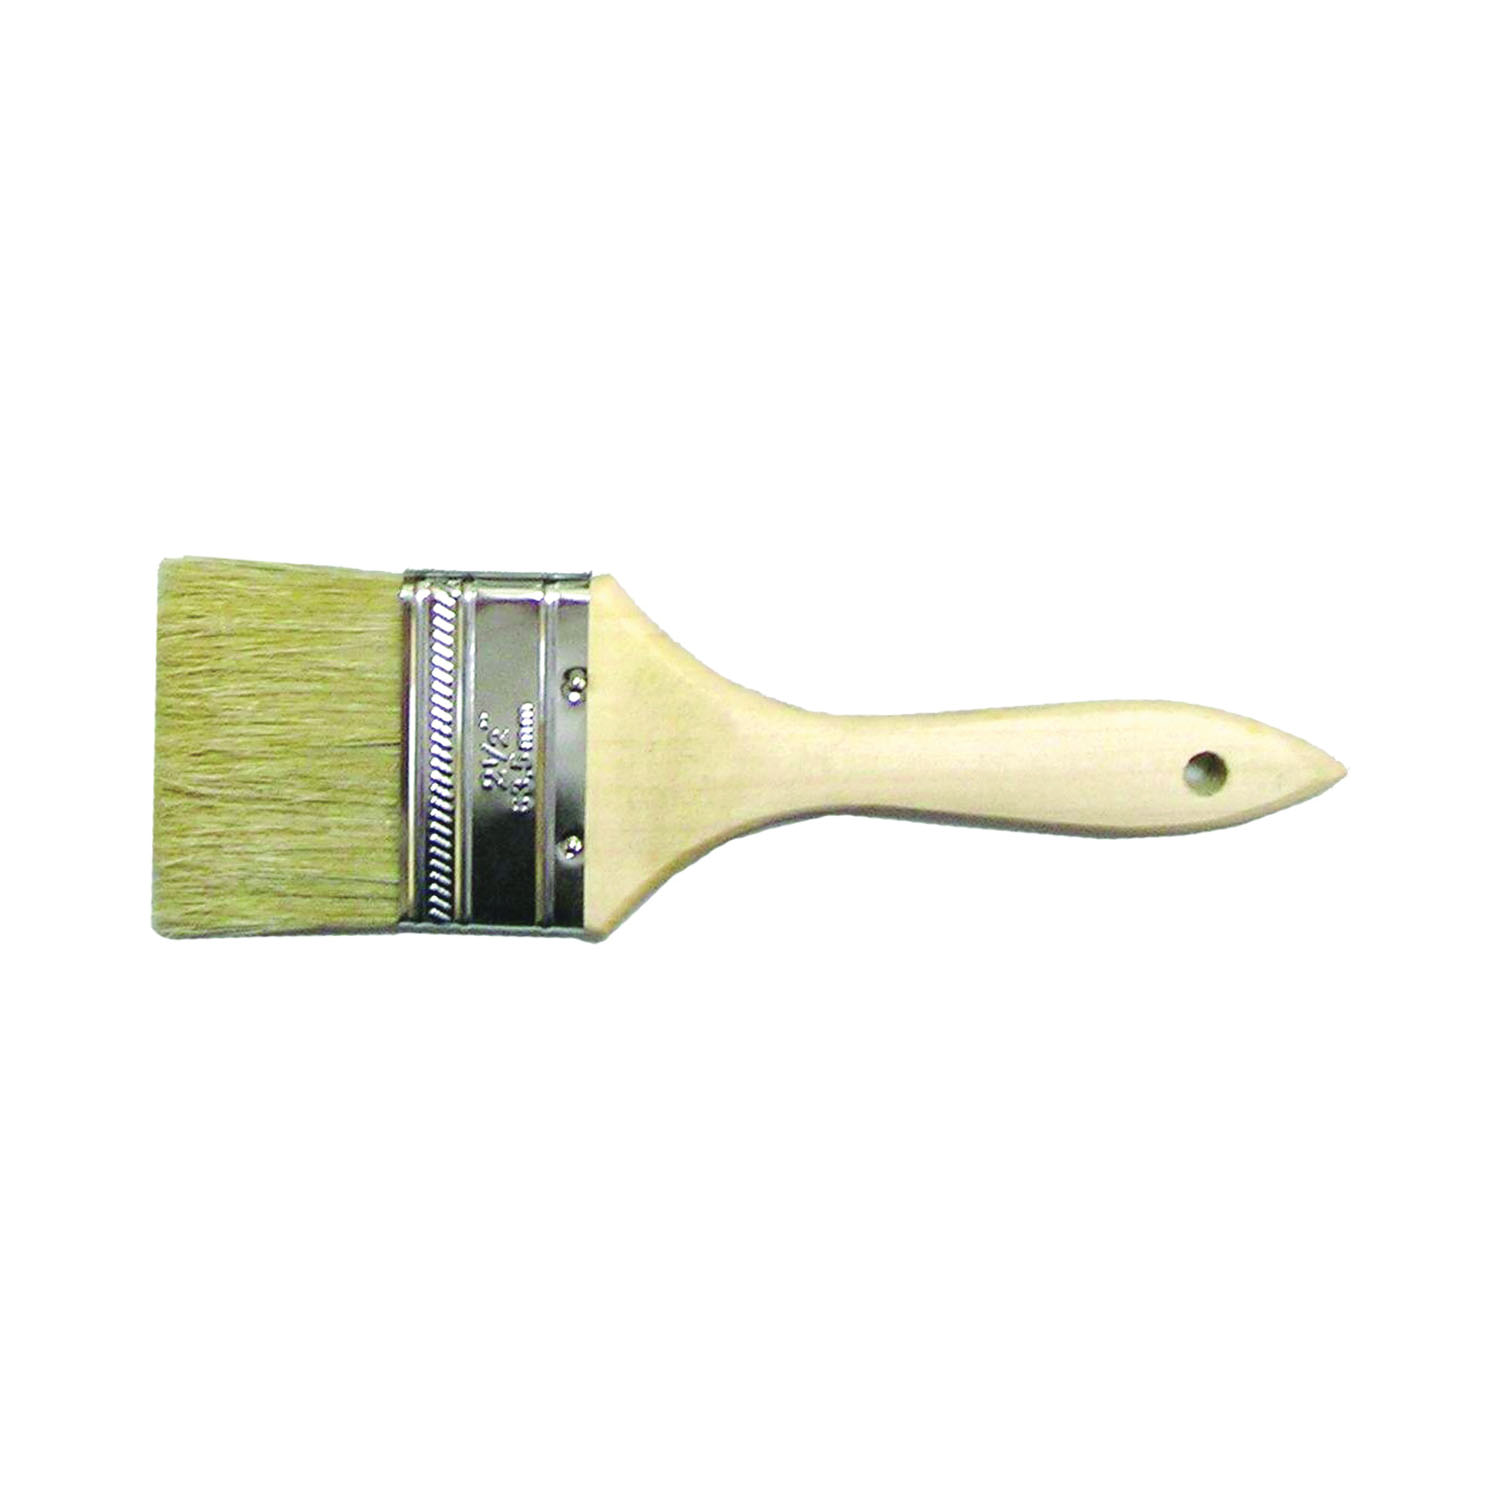 150025 Chip Paint Brush, Plain-Grip Handle